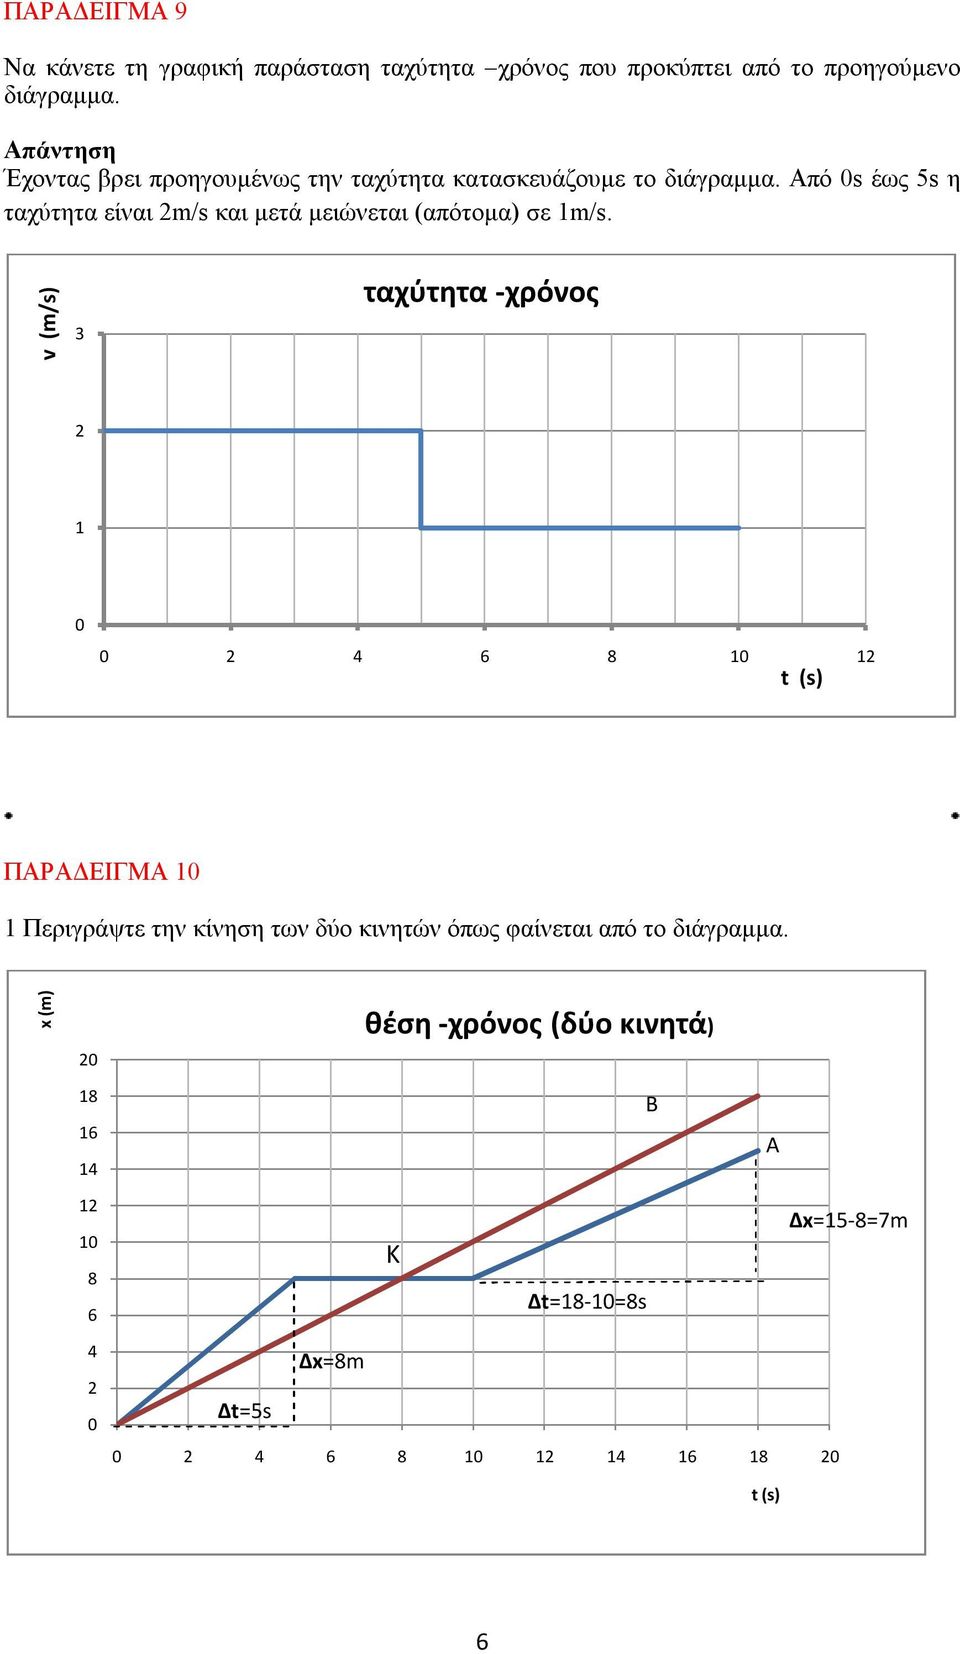 Από s έως s η ταχύτητα είναι m/s και μετά μειώνεται (απότομα) σε m/s.